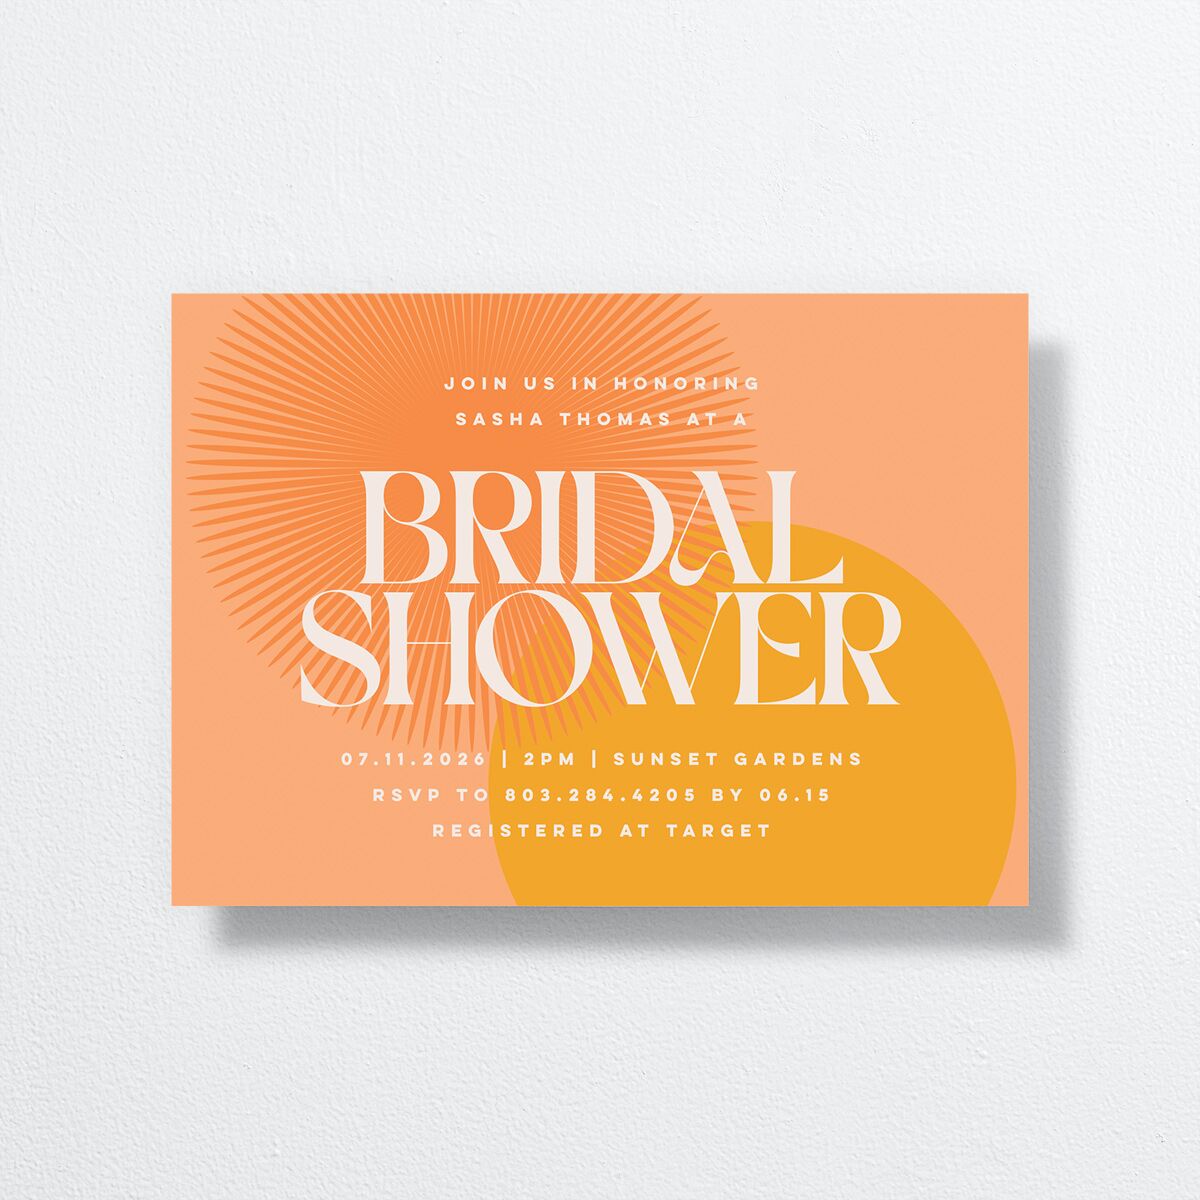 Retro Sunburst Bridal Shower Invitations front in orange